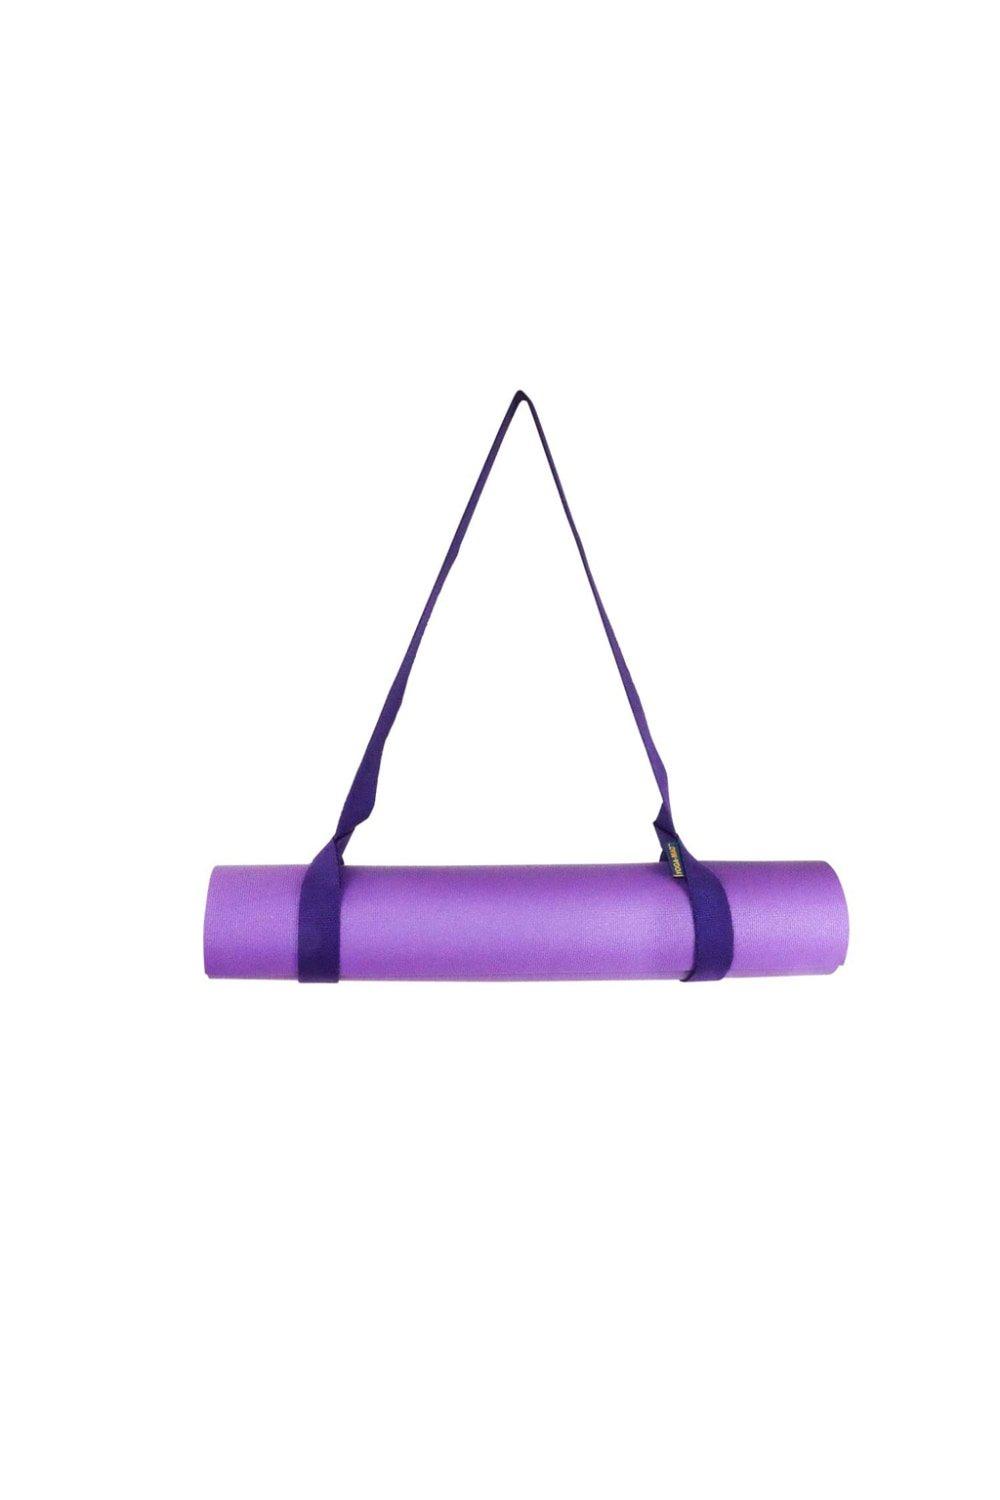 Ремень для переноски хлопкового коврика для йоги Yoga-Mad, фиолетовый